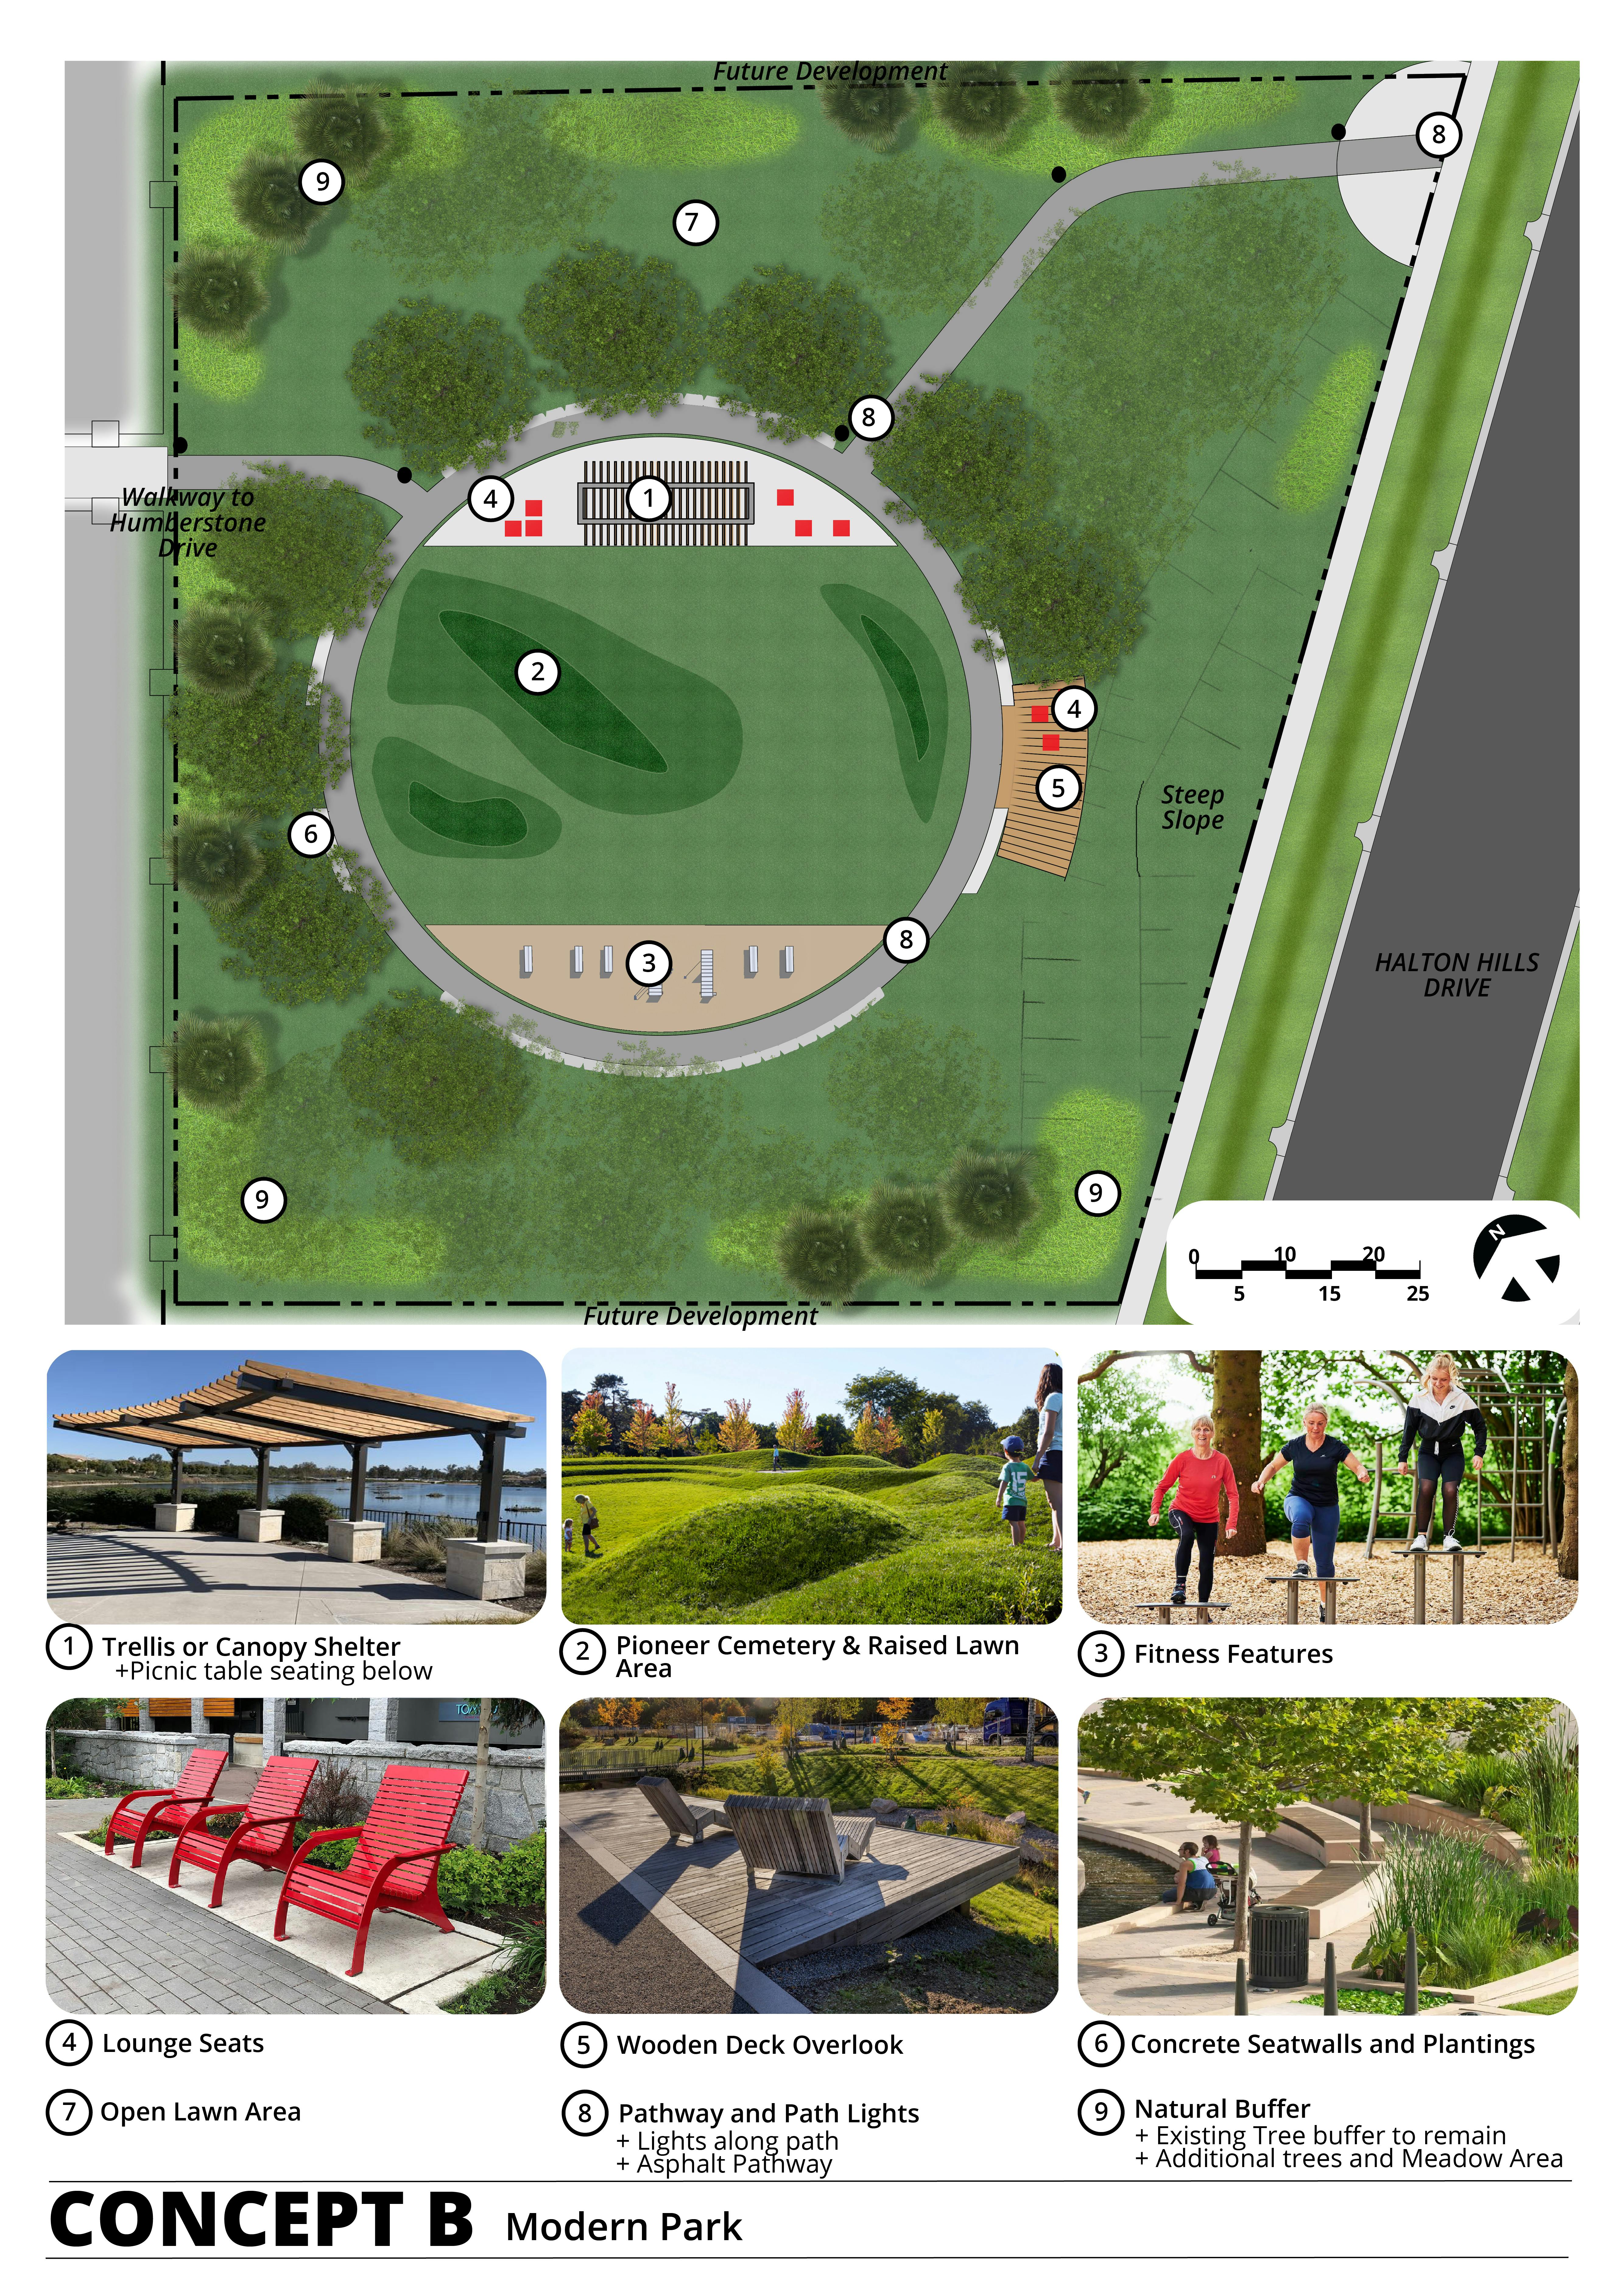 Initial Survey - Concept B - Modern Park